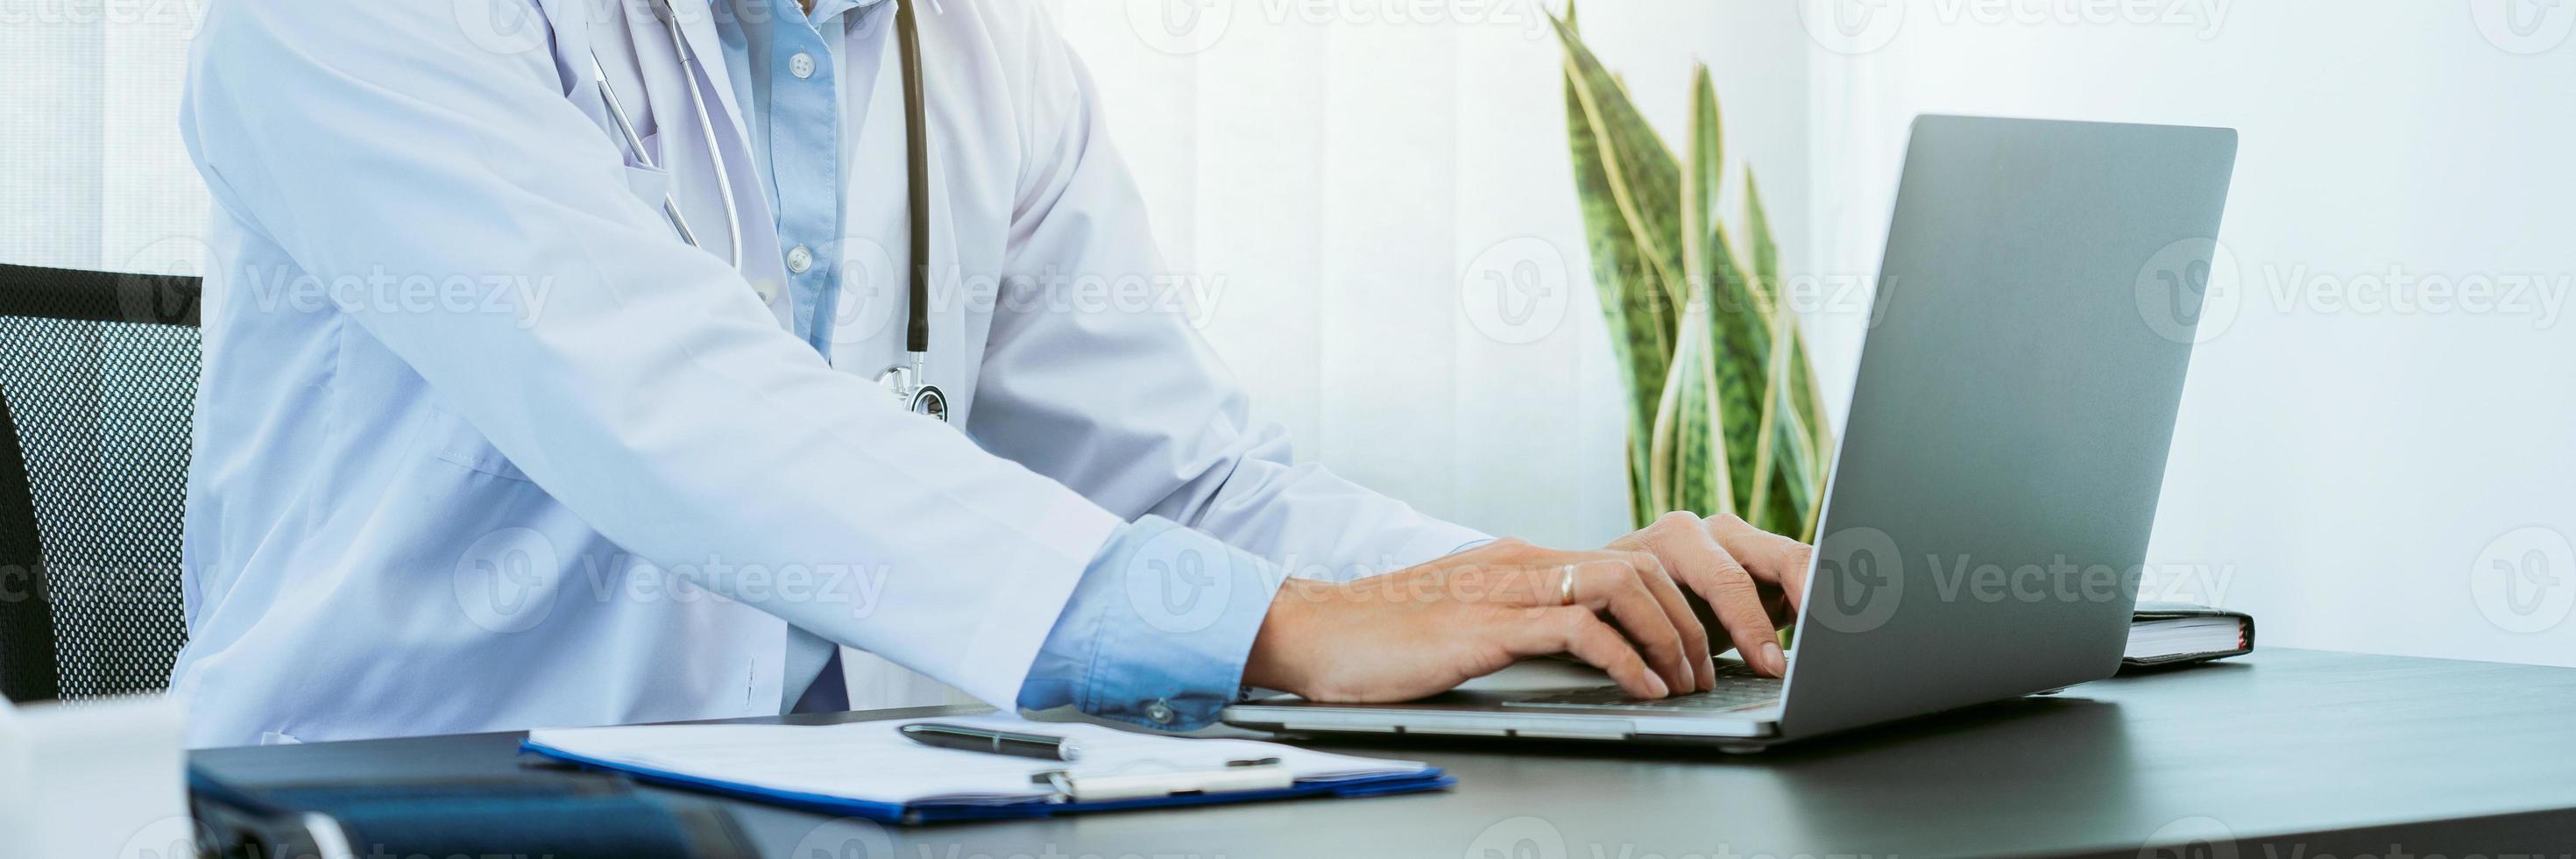 dokter zat op kantoor op een laptopcomputer te werken terwijl hij een masker droeg. foto